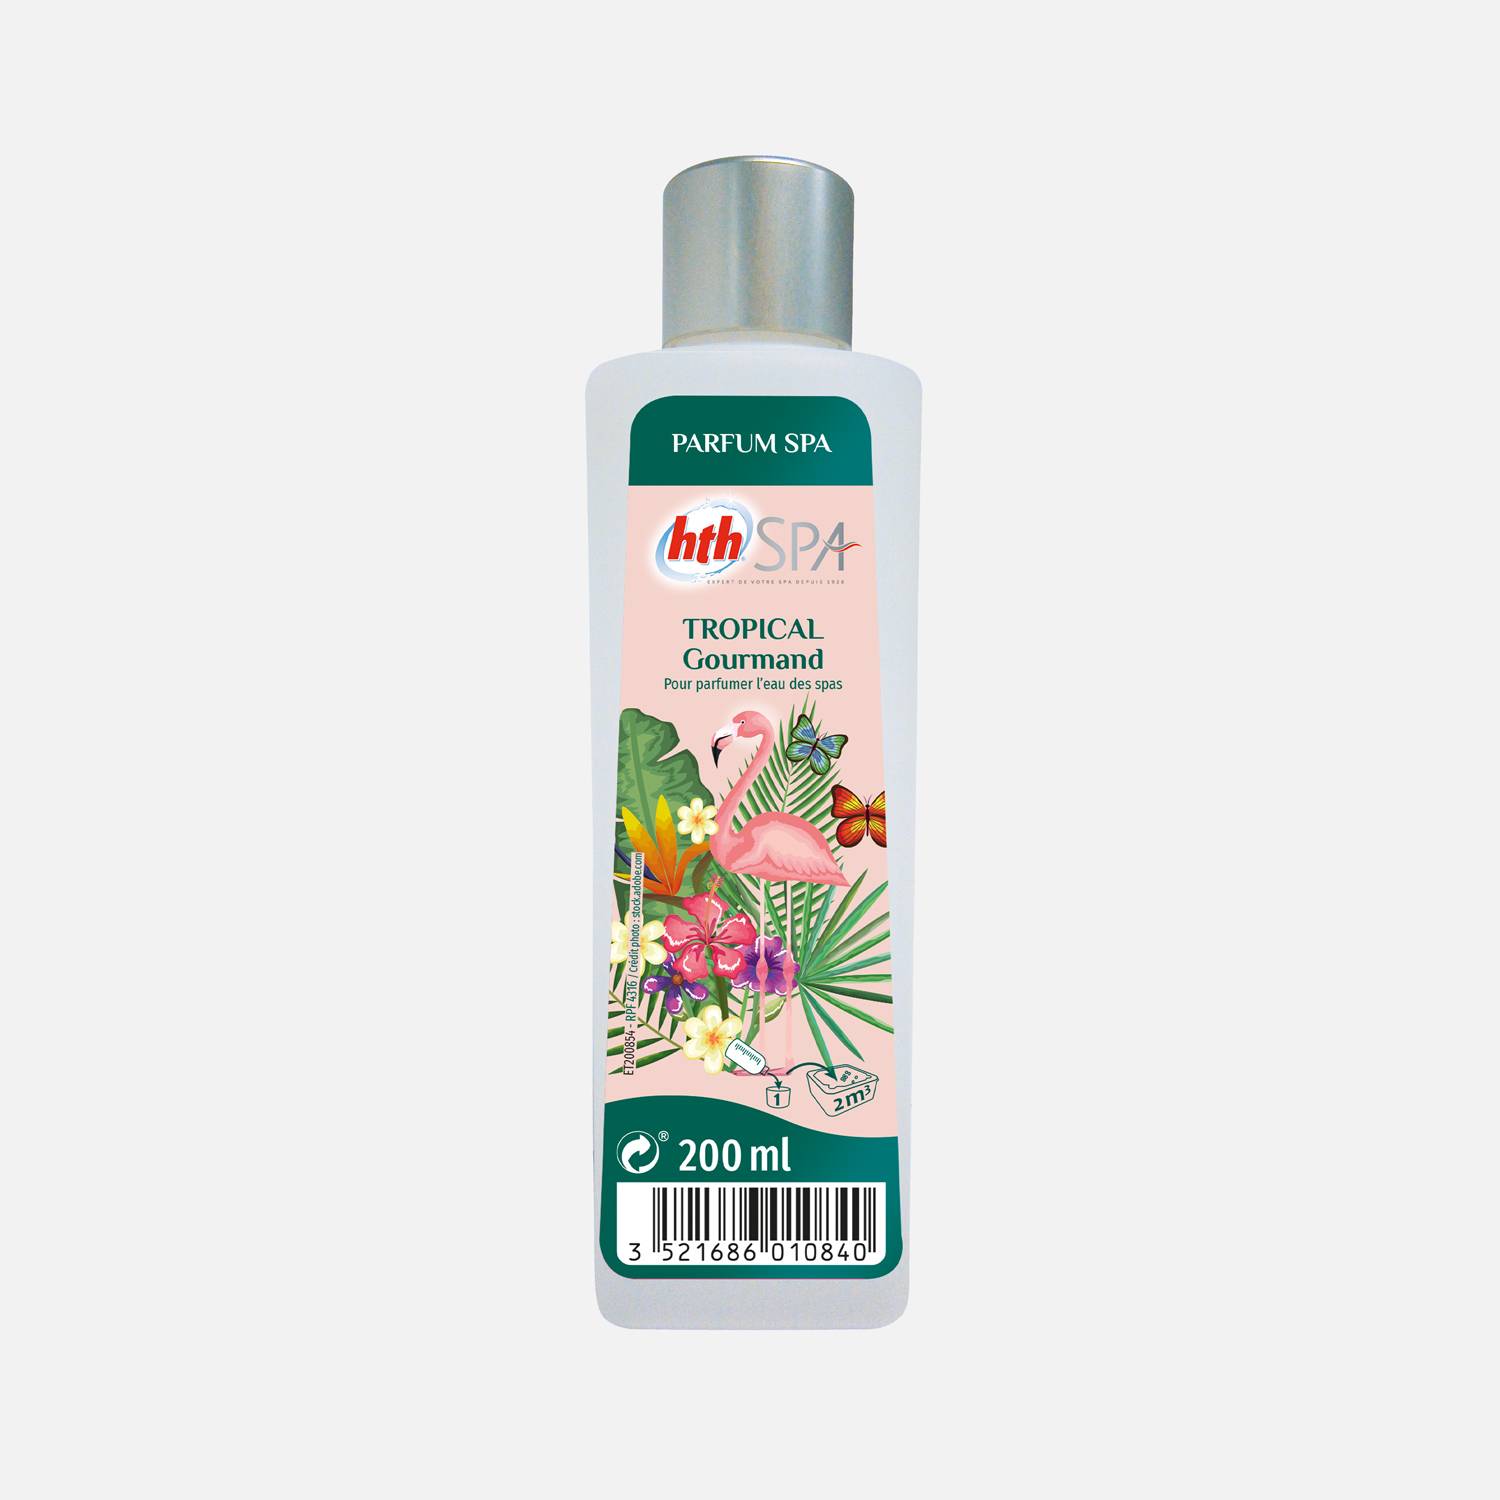 Tropisch parfum voor spa 200mL – HTH, tropische geur, parfum van natuurlijke oorsprong, gemaakt in Frankrijk Photo1